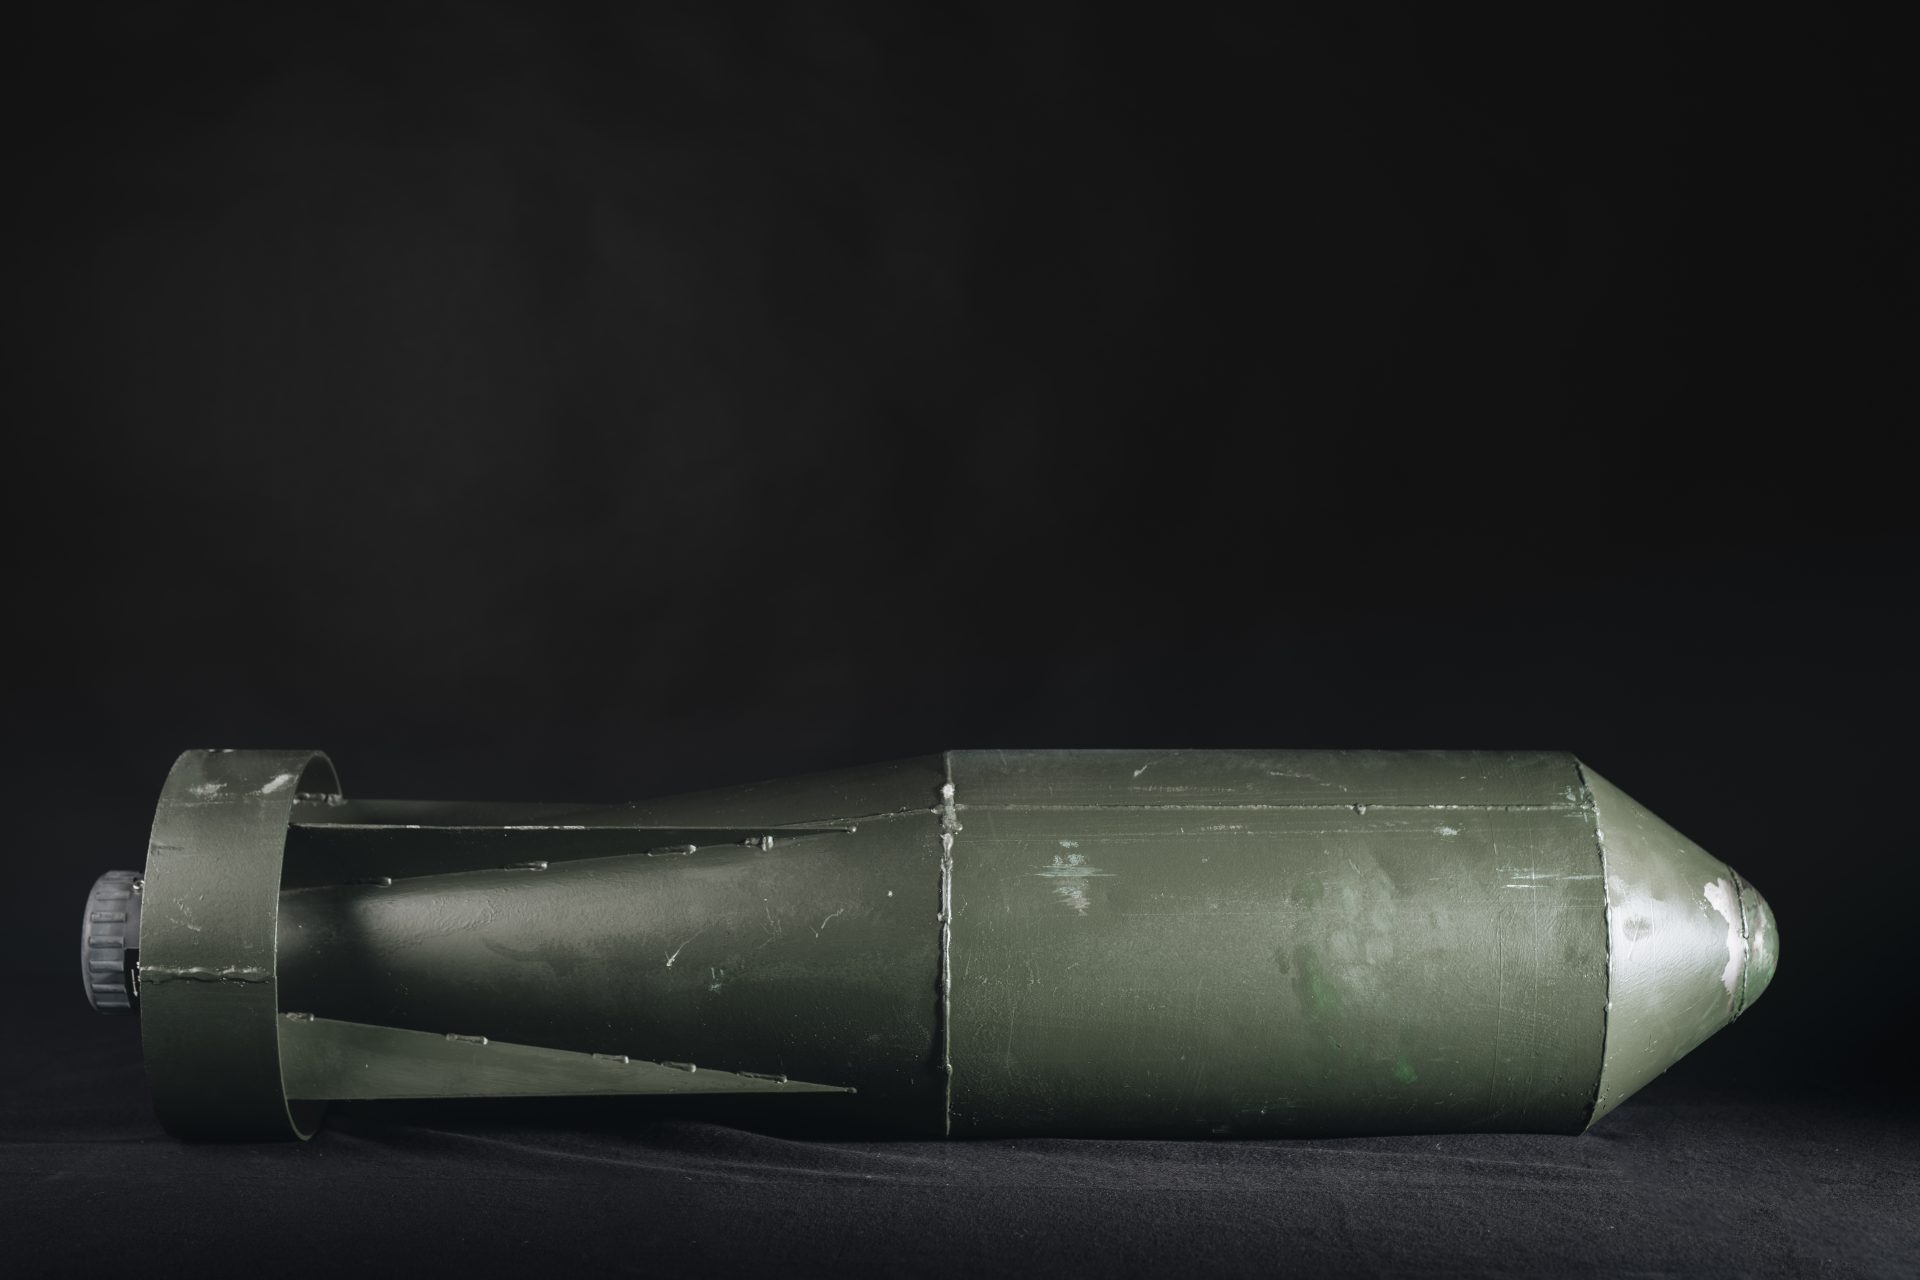 En mörkgrå cylinderformad bomb med styrfenor.